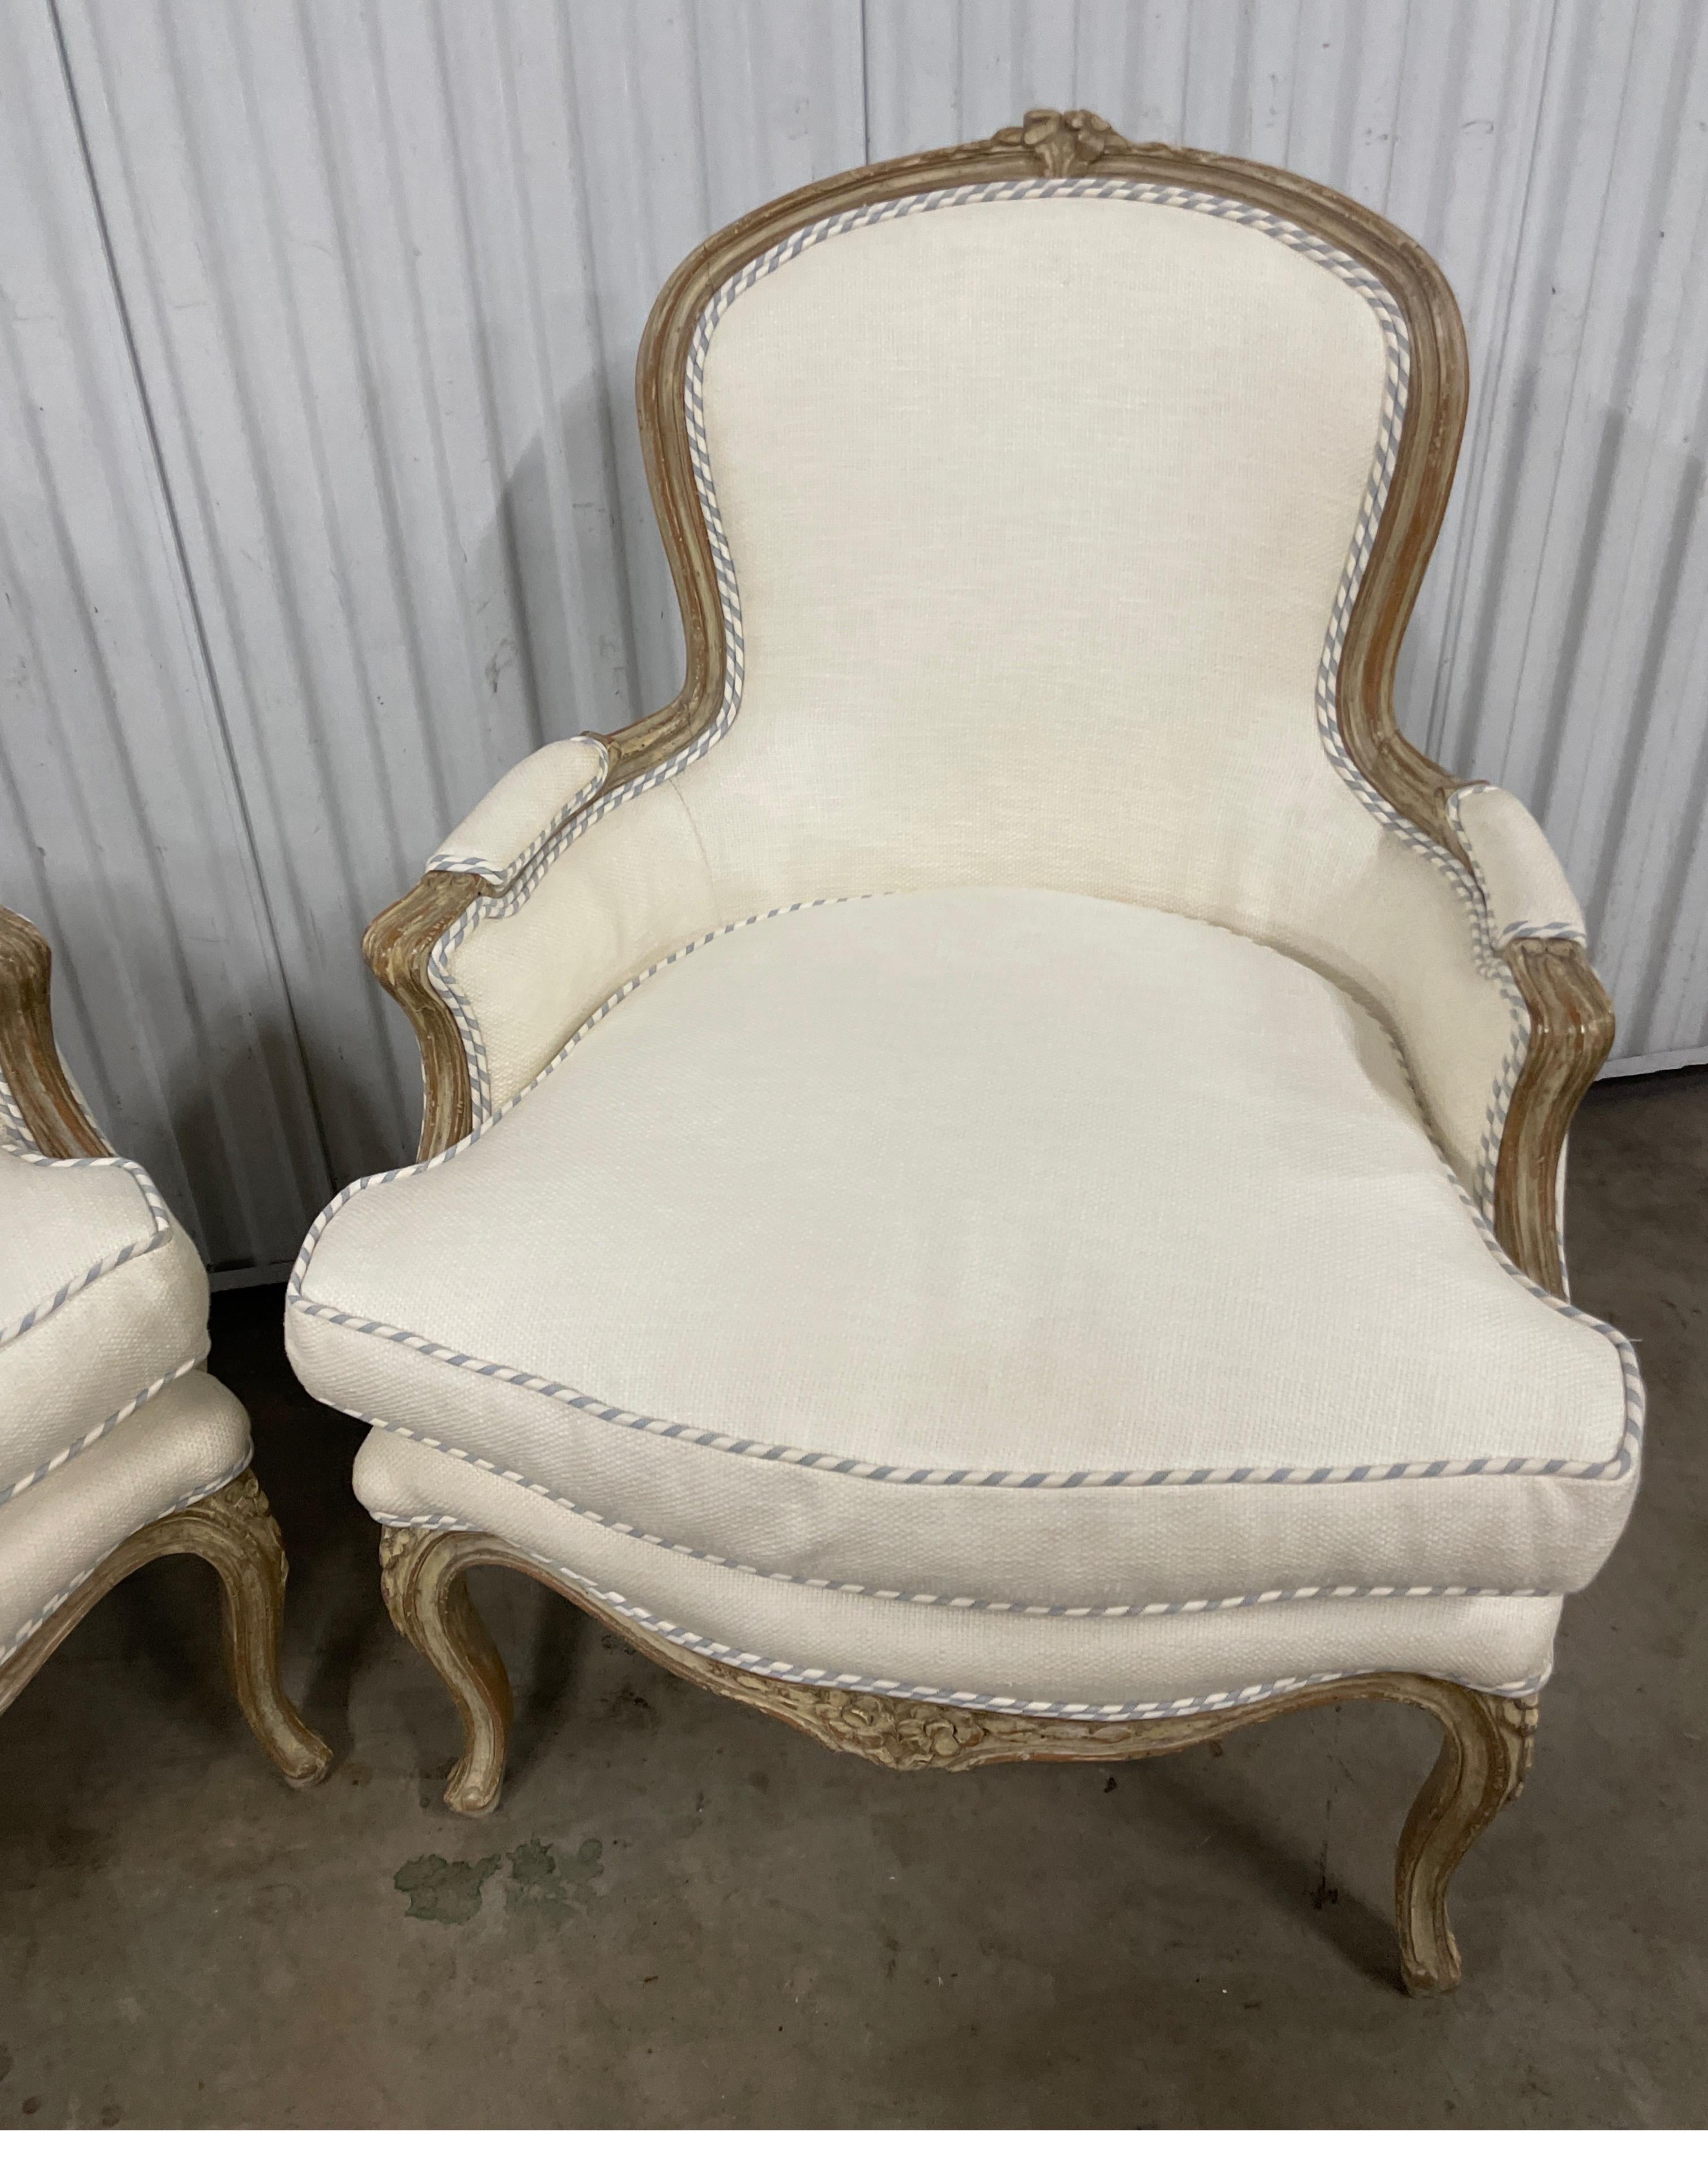 Très chic paire de chaises bergères françaises du 19ème siècle, tapissées d'un tissu en coton / lin blanc cassé, avec une ceinture et des dossiers en coutil bleu et blanc. Les cadres sont légèrement blanchis à la chaux.